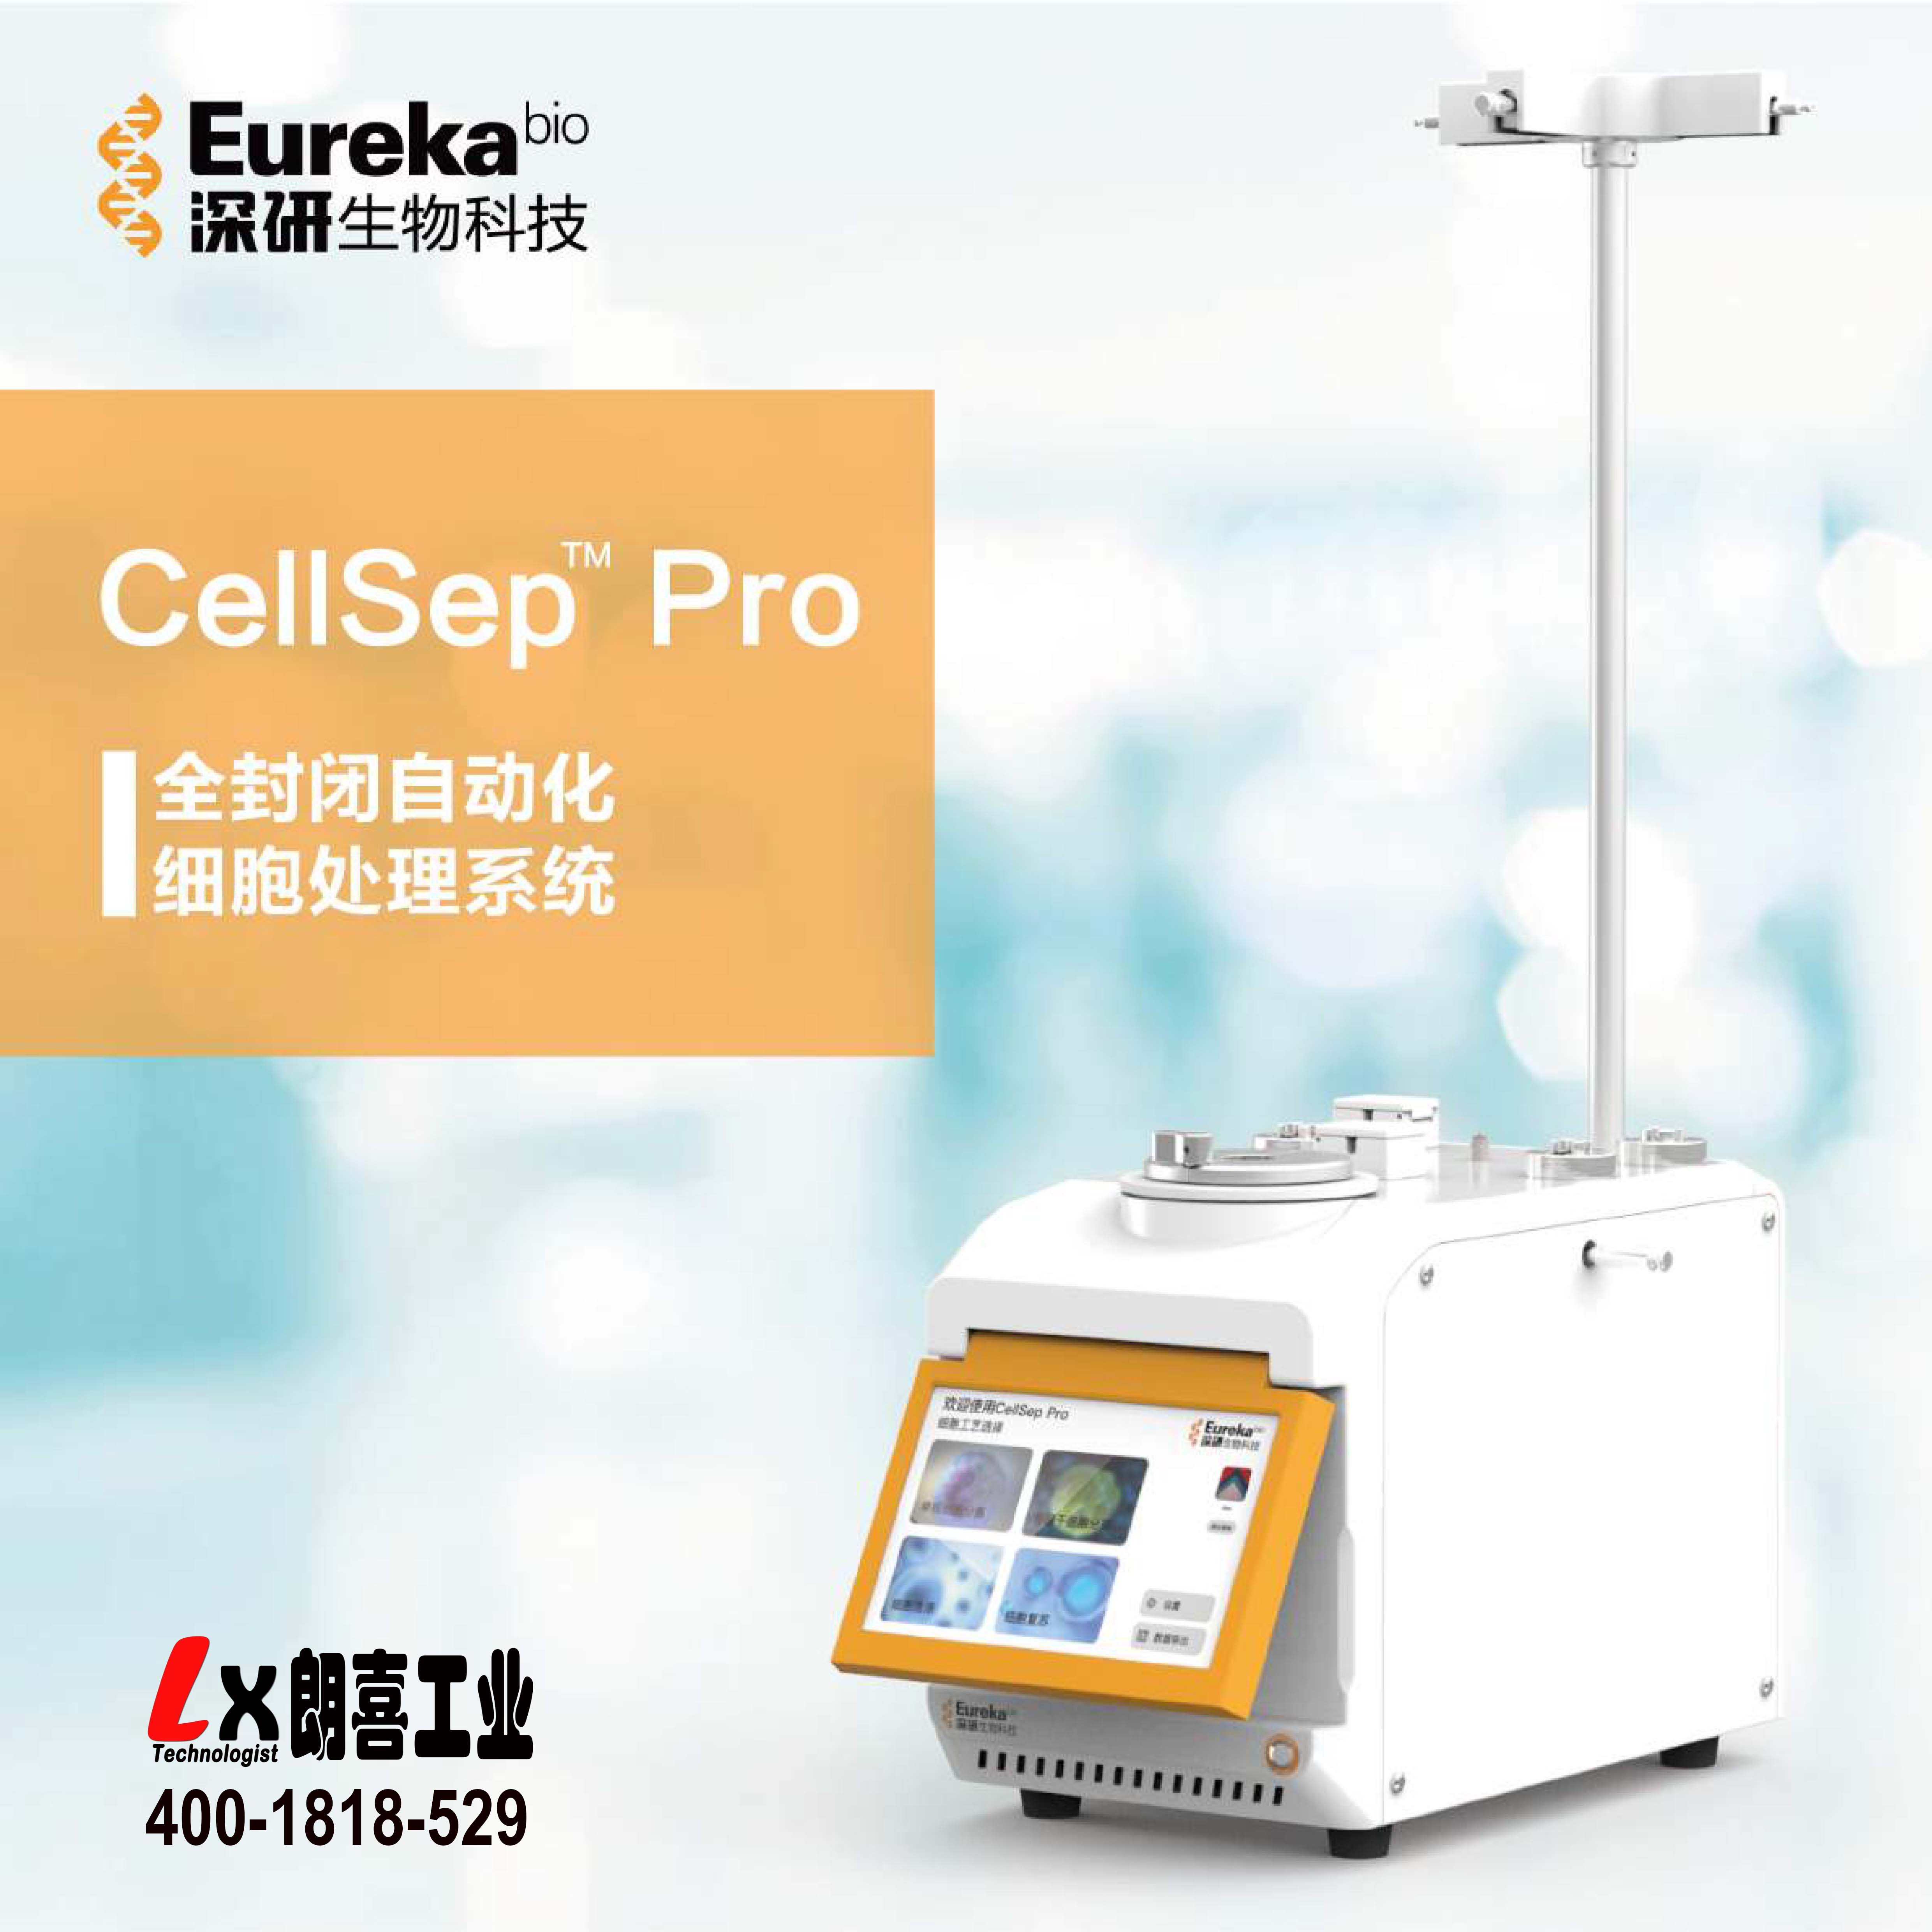 CellSep Pro 自动化细胞处理系统